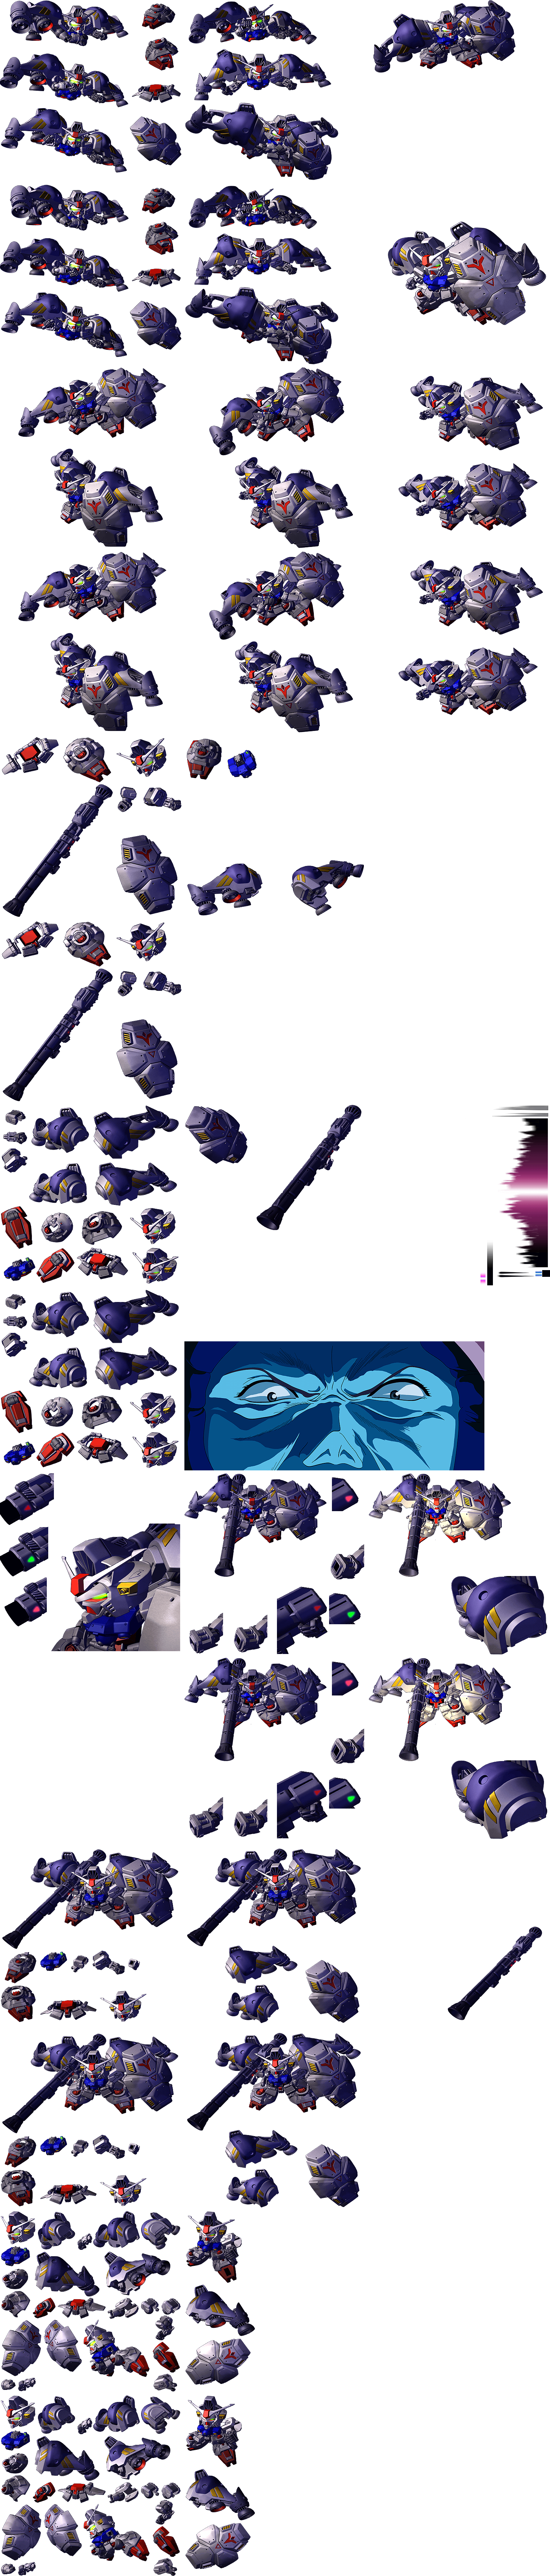 Gundam GP 02 Atomic Bazooka